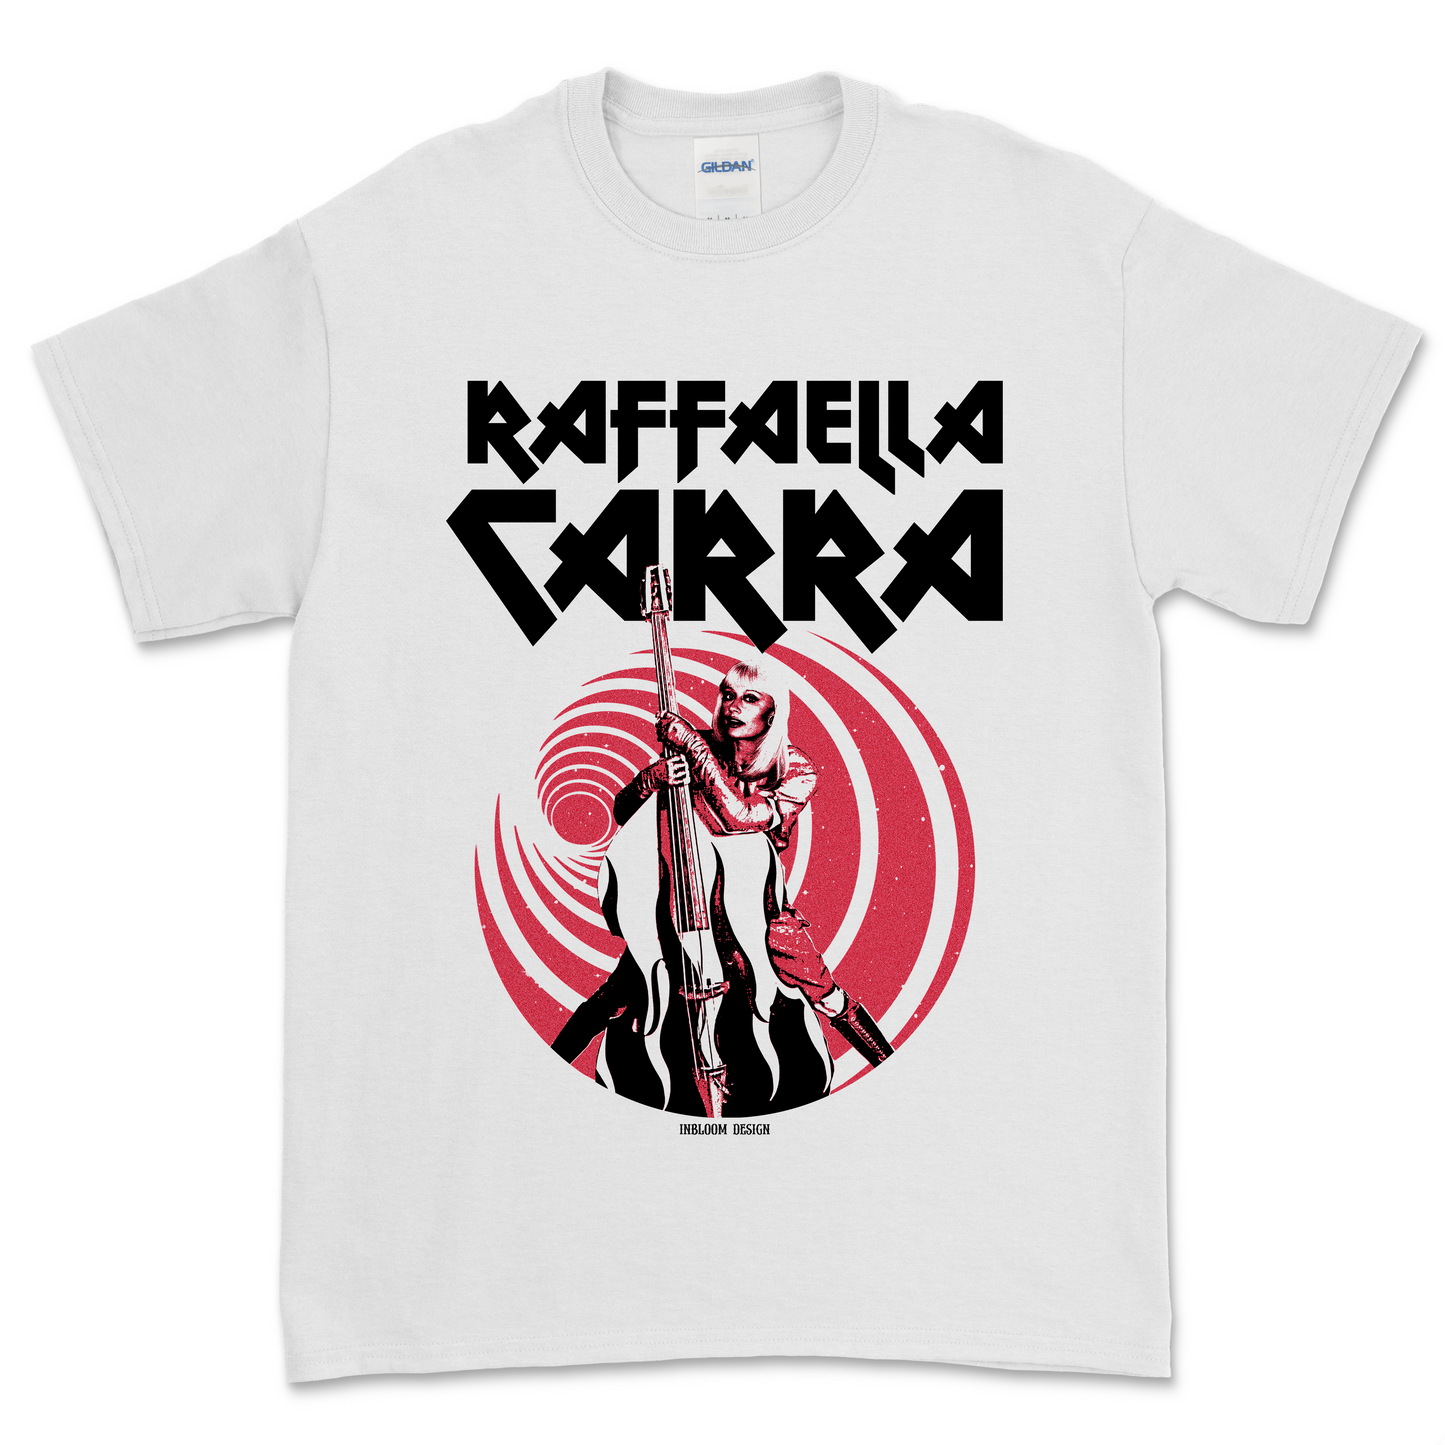 RAFFAELLA CARRA - Alex Inbloom Unisex / Blanca / S Camisas y tops